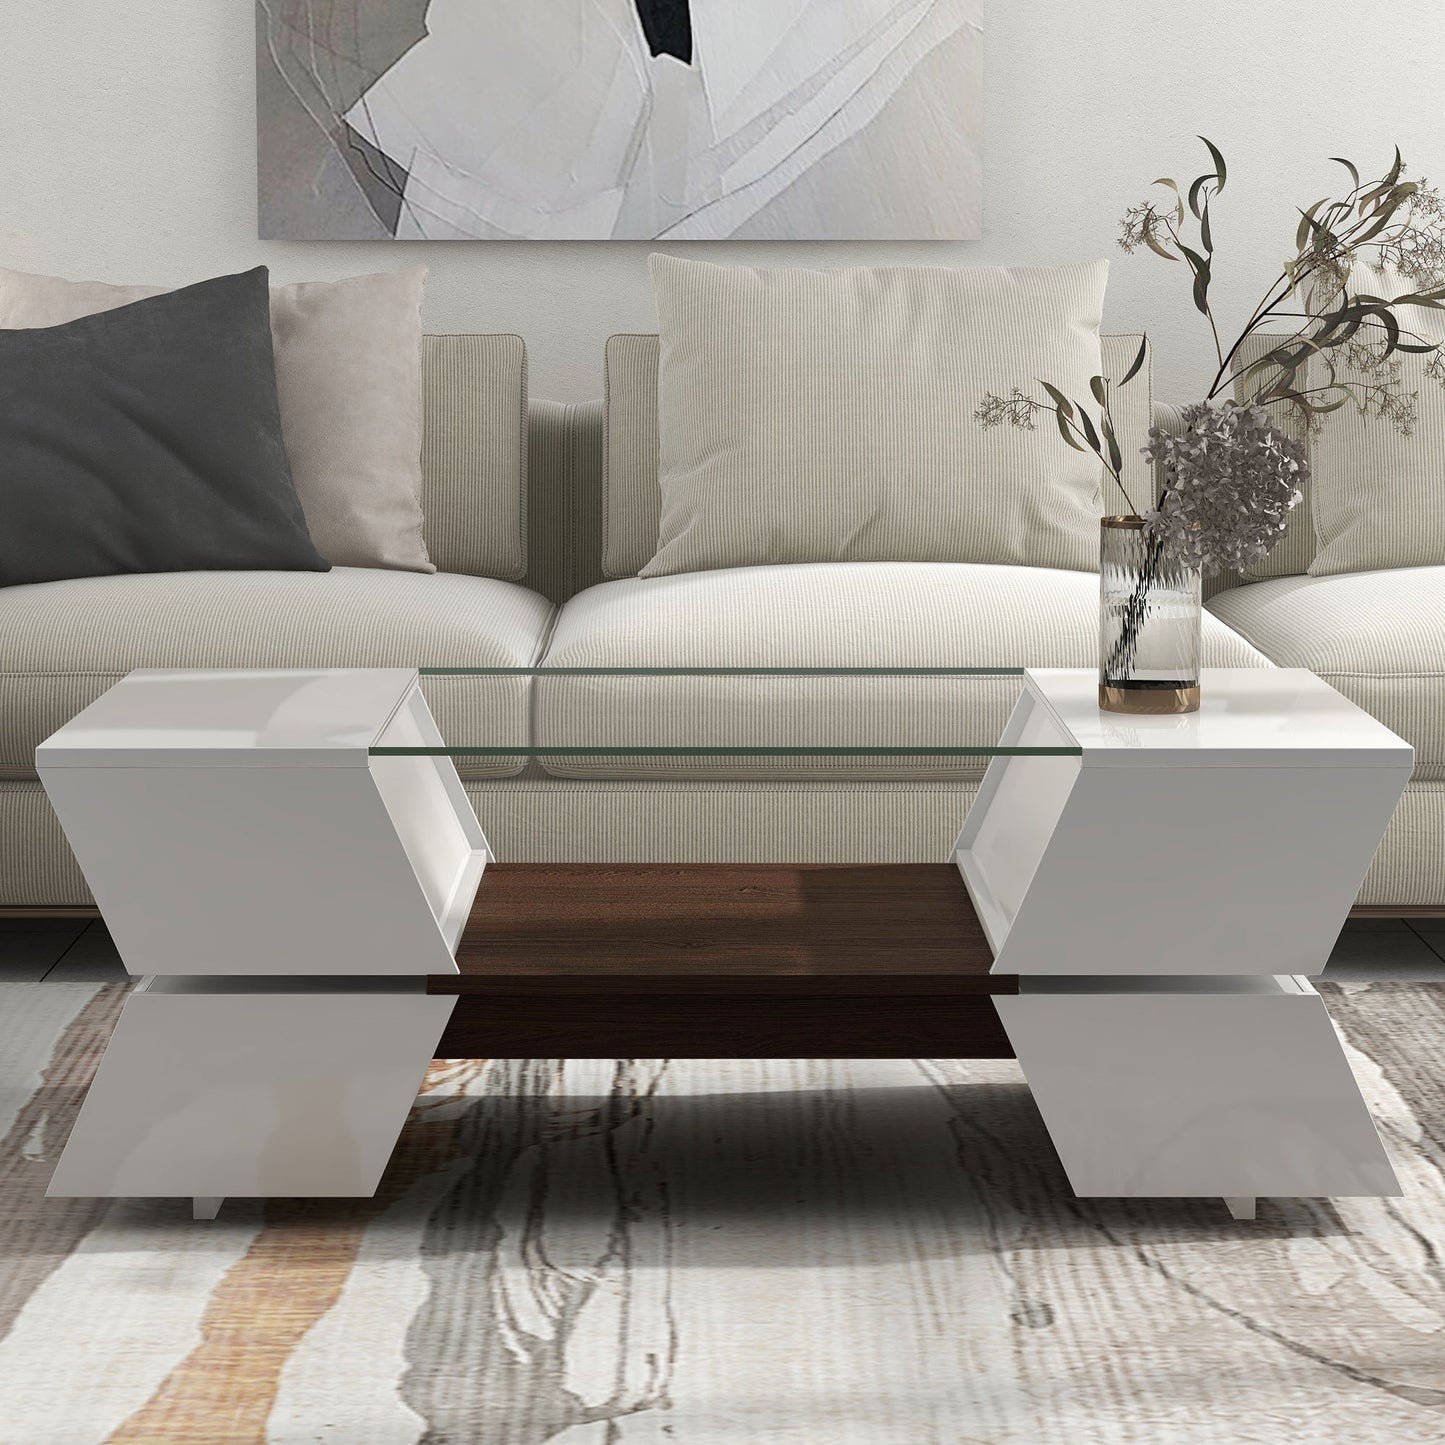 Modernist 2-Tier Center Table for Living Room- White